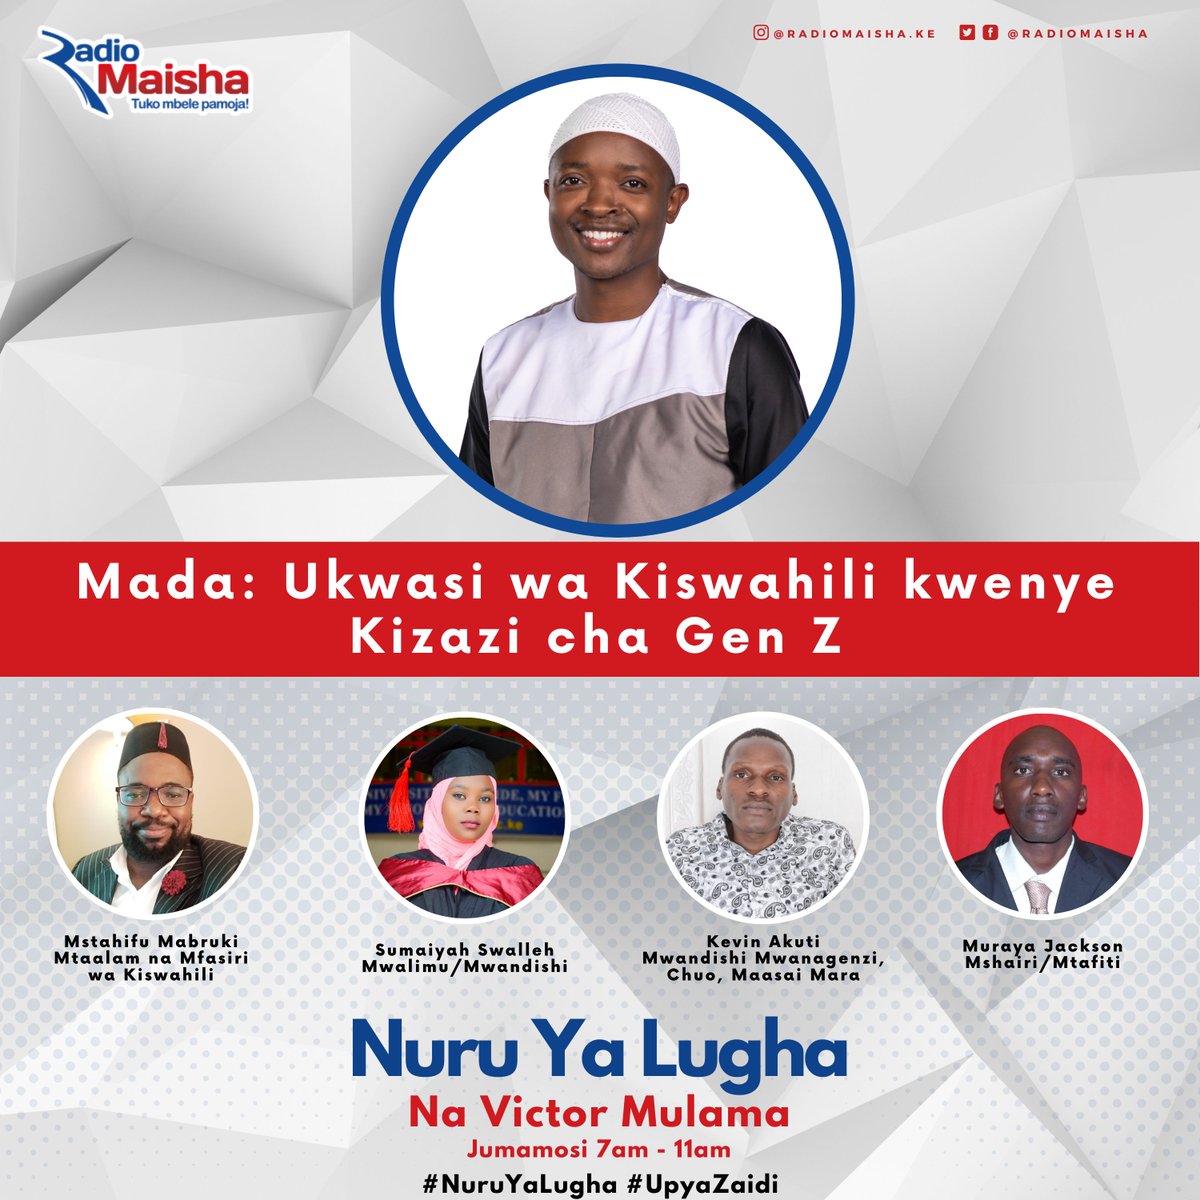 Unaendelea kuelimika kwenye Nuru ya Lugha na Victor Mulama katika Radio Maisha.  

Tuko Mbele Pamoja. #NuruYaLugha